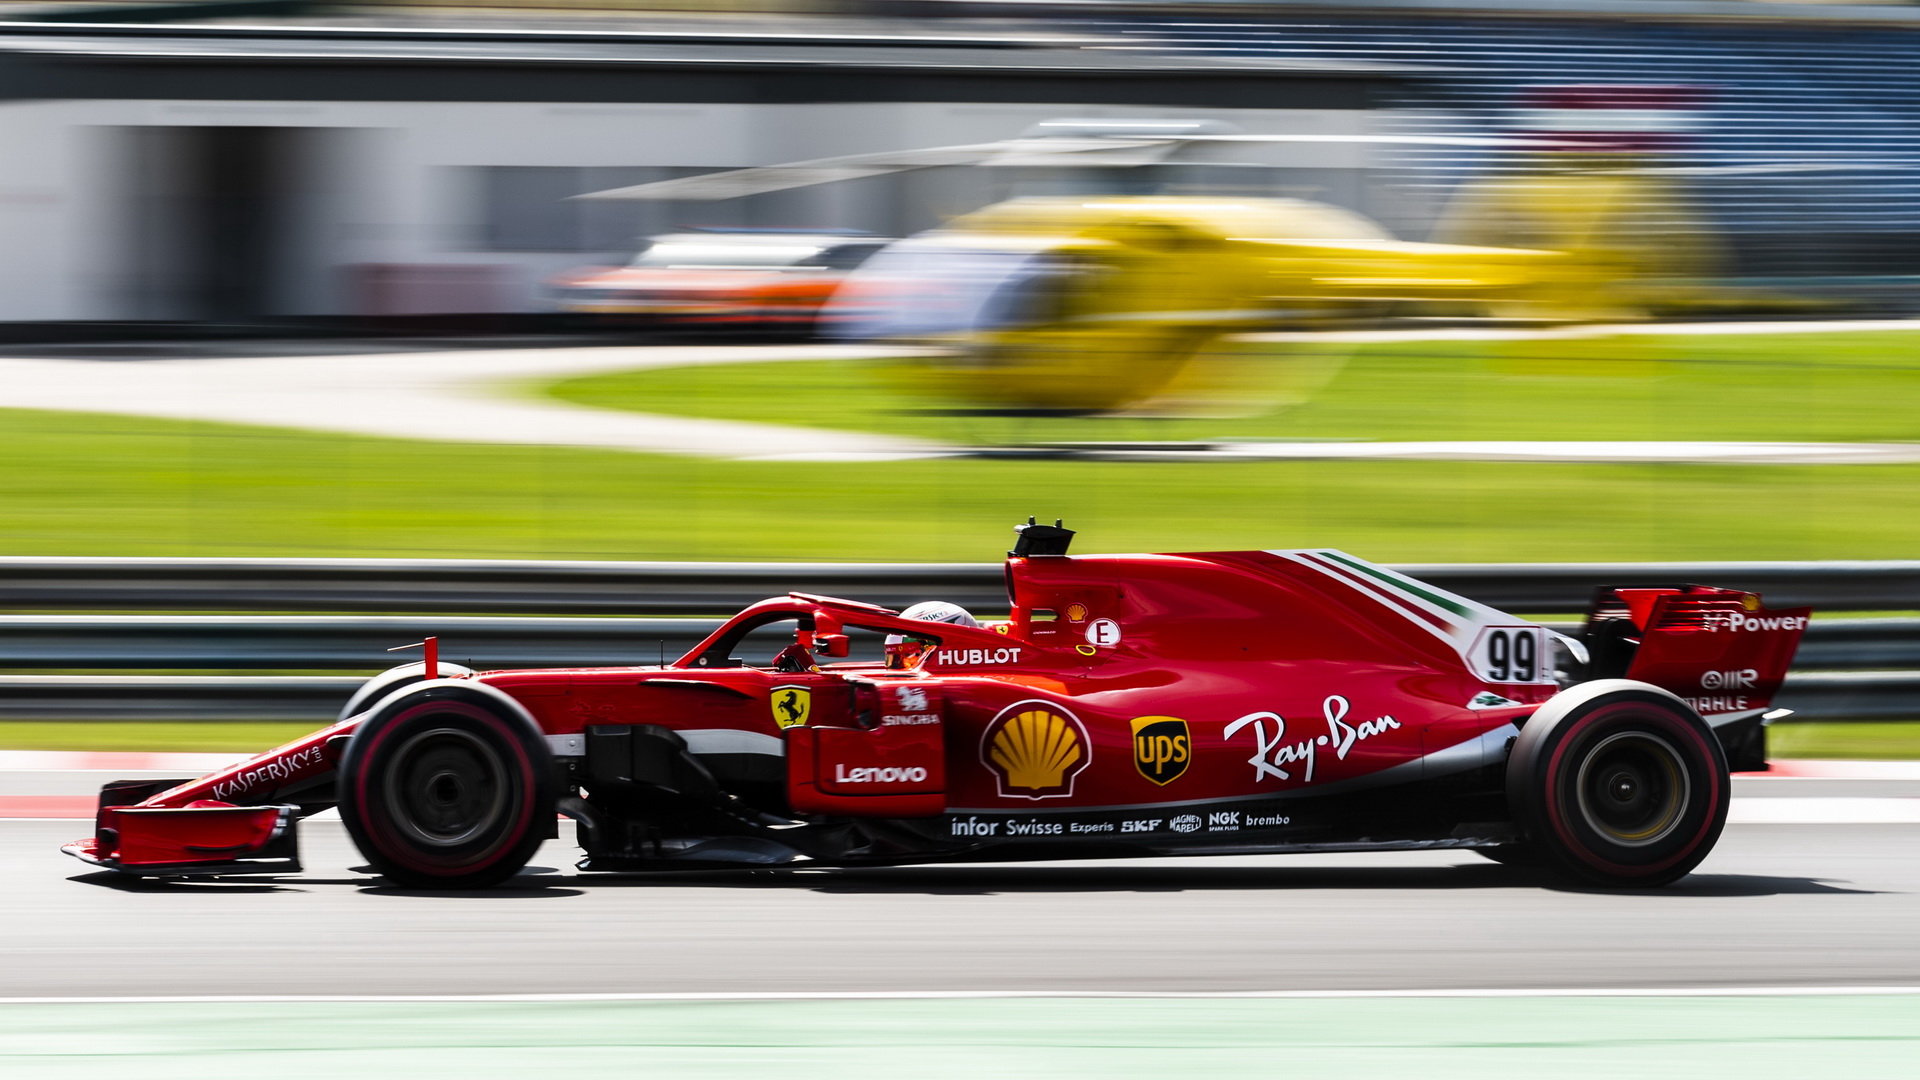 Ferrari dosáhlo se svou pohonnou jednotou velkého pokroku, v oblasti výkonu už předčí i dříve dominantní Mercedes